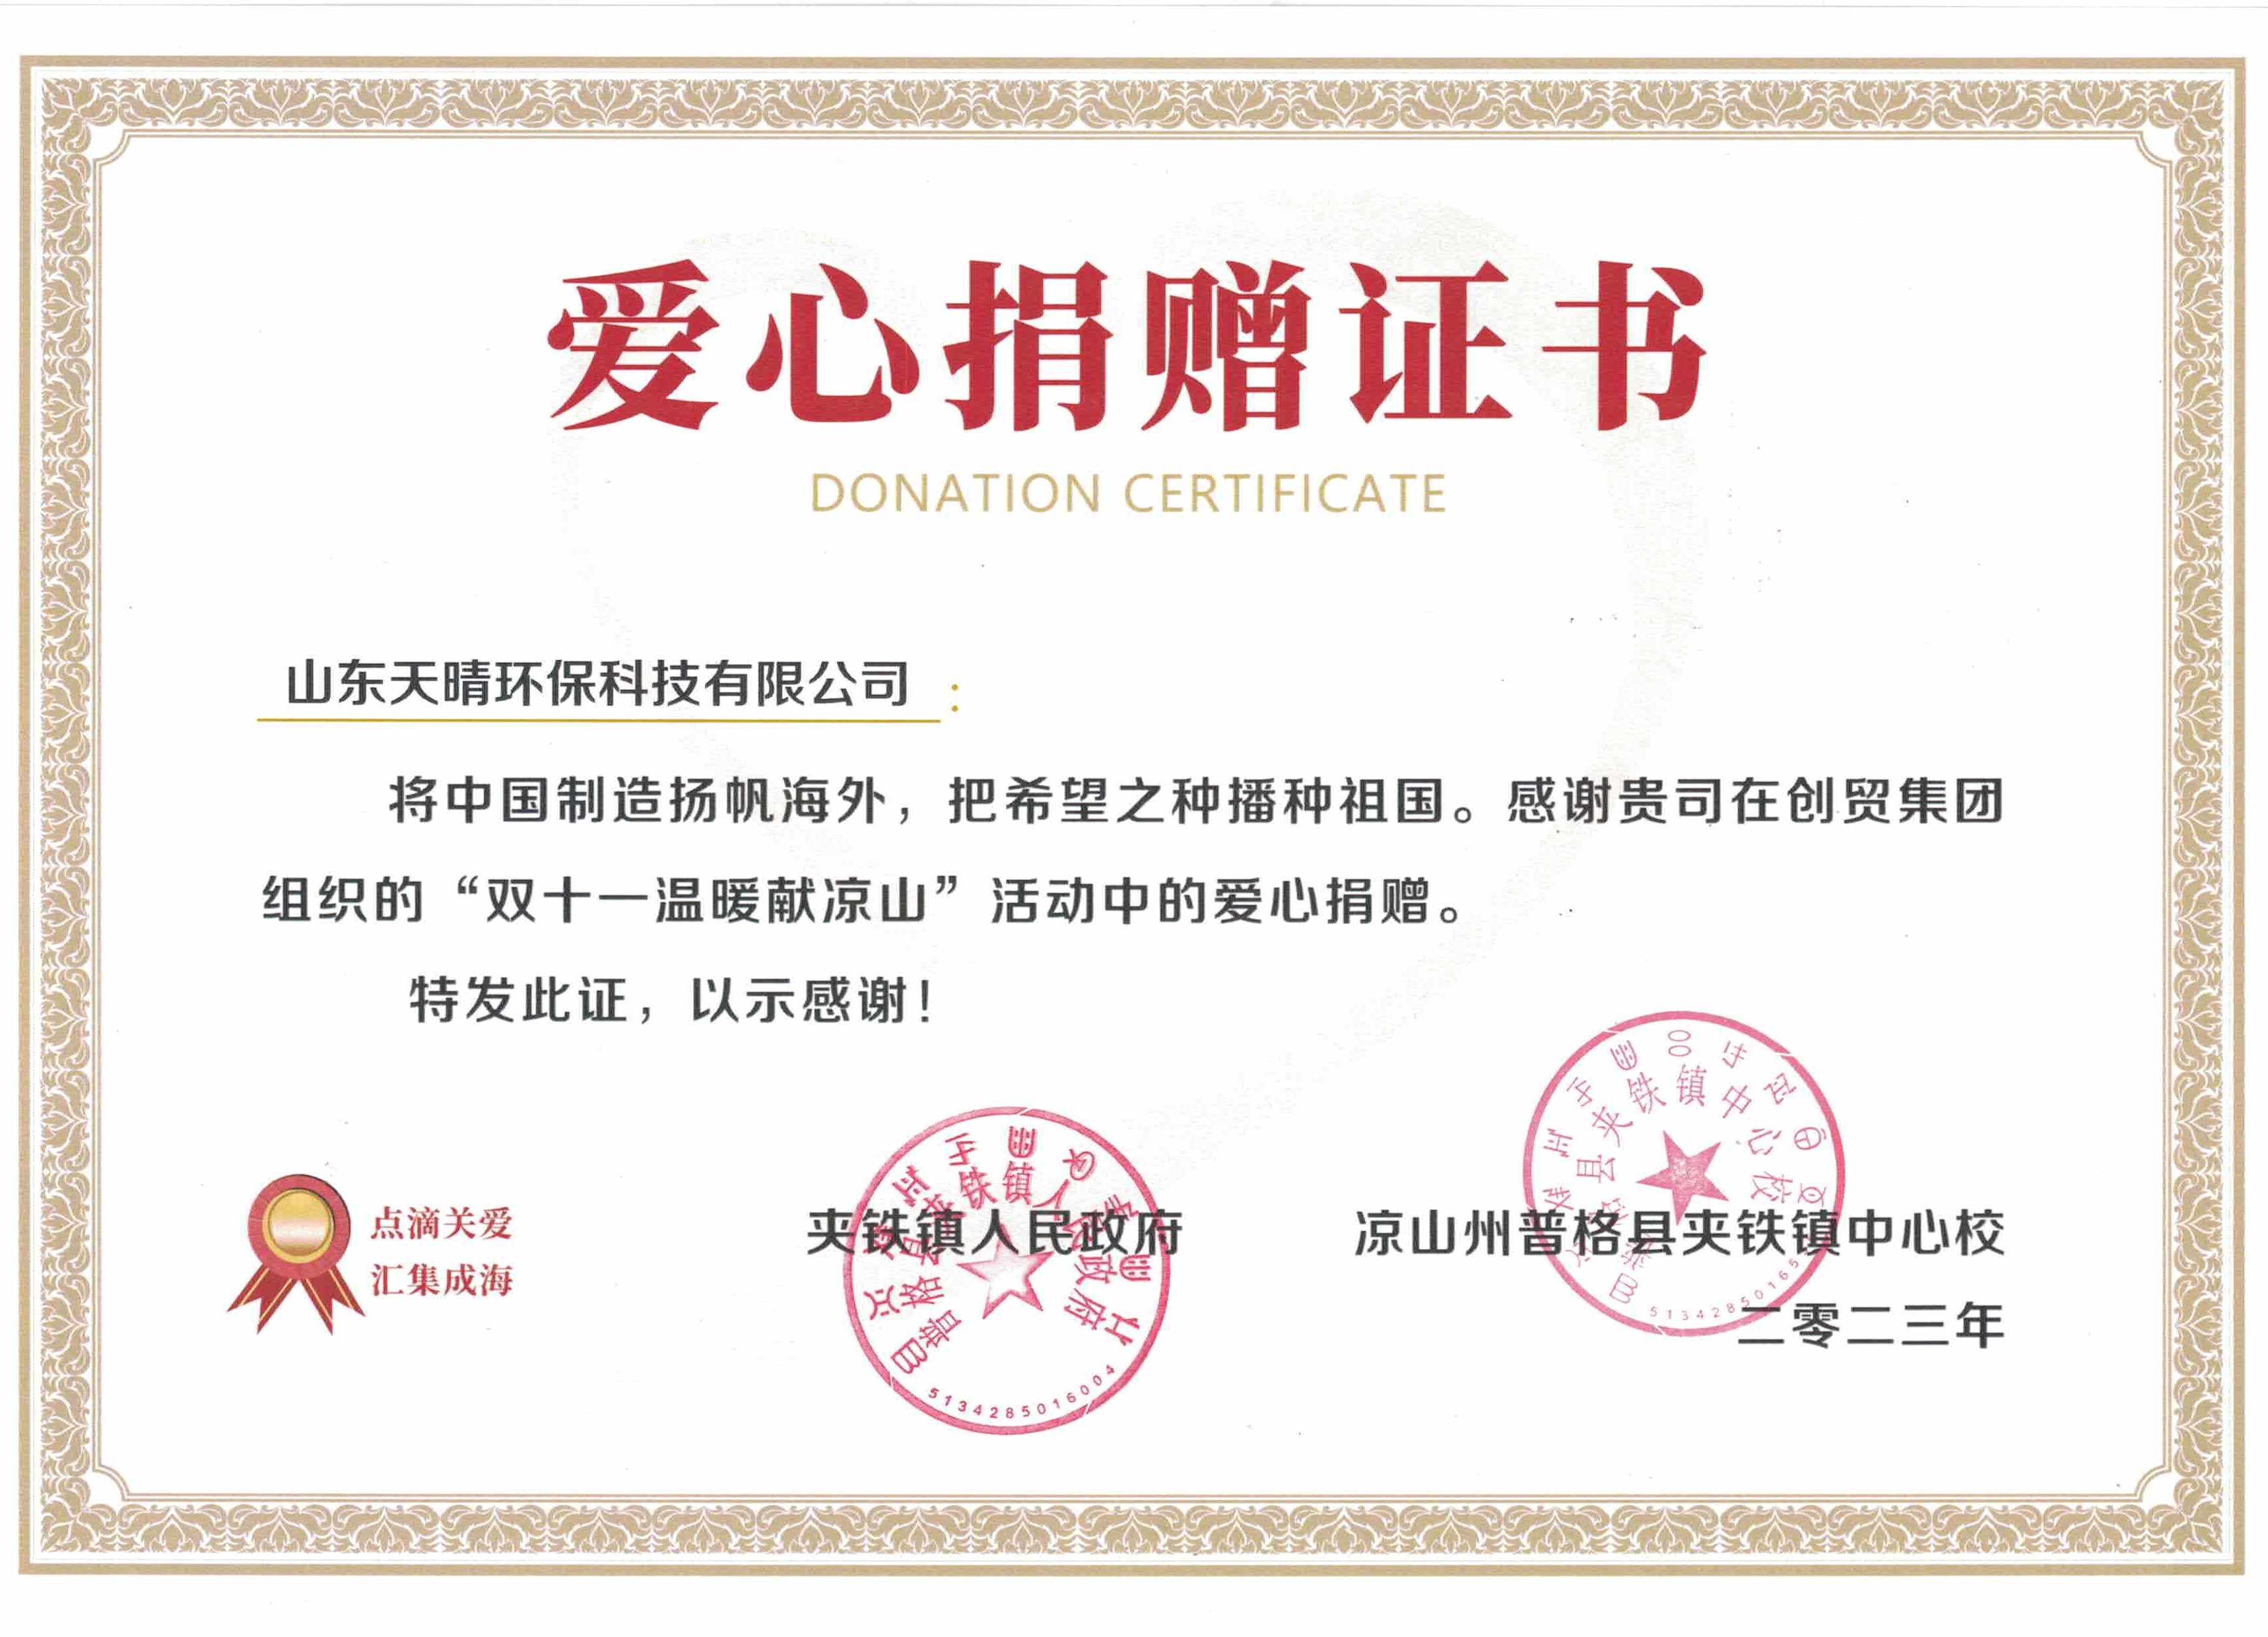 Poduzeće s toplinom i društvenom odgovornošću - Shandong Tianqing